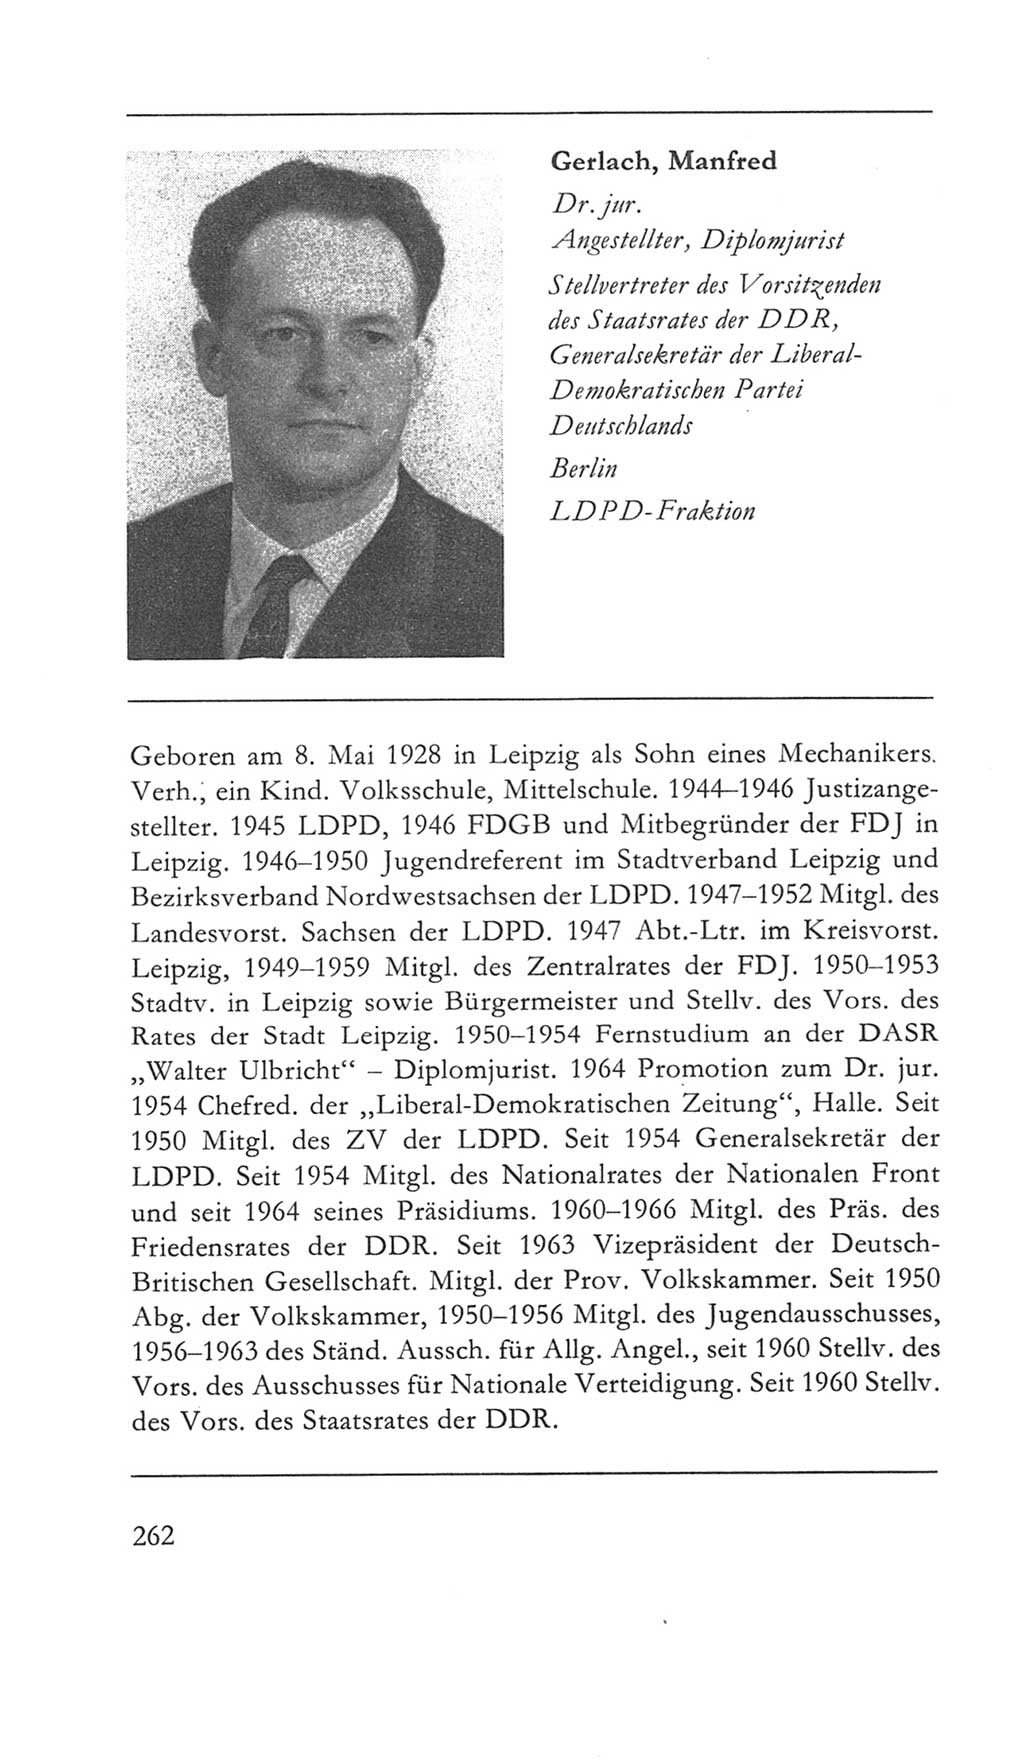 Volkskammer (VK) der Deutschen Demokratischen Republik (DDR) 5. Wahlperiode 1967-1971, Seite 262 (VK. DDR 5. WP. 1967-1971, S. 262)